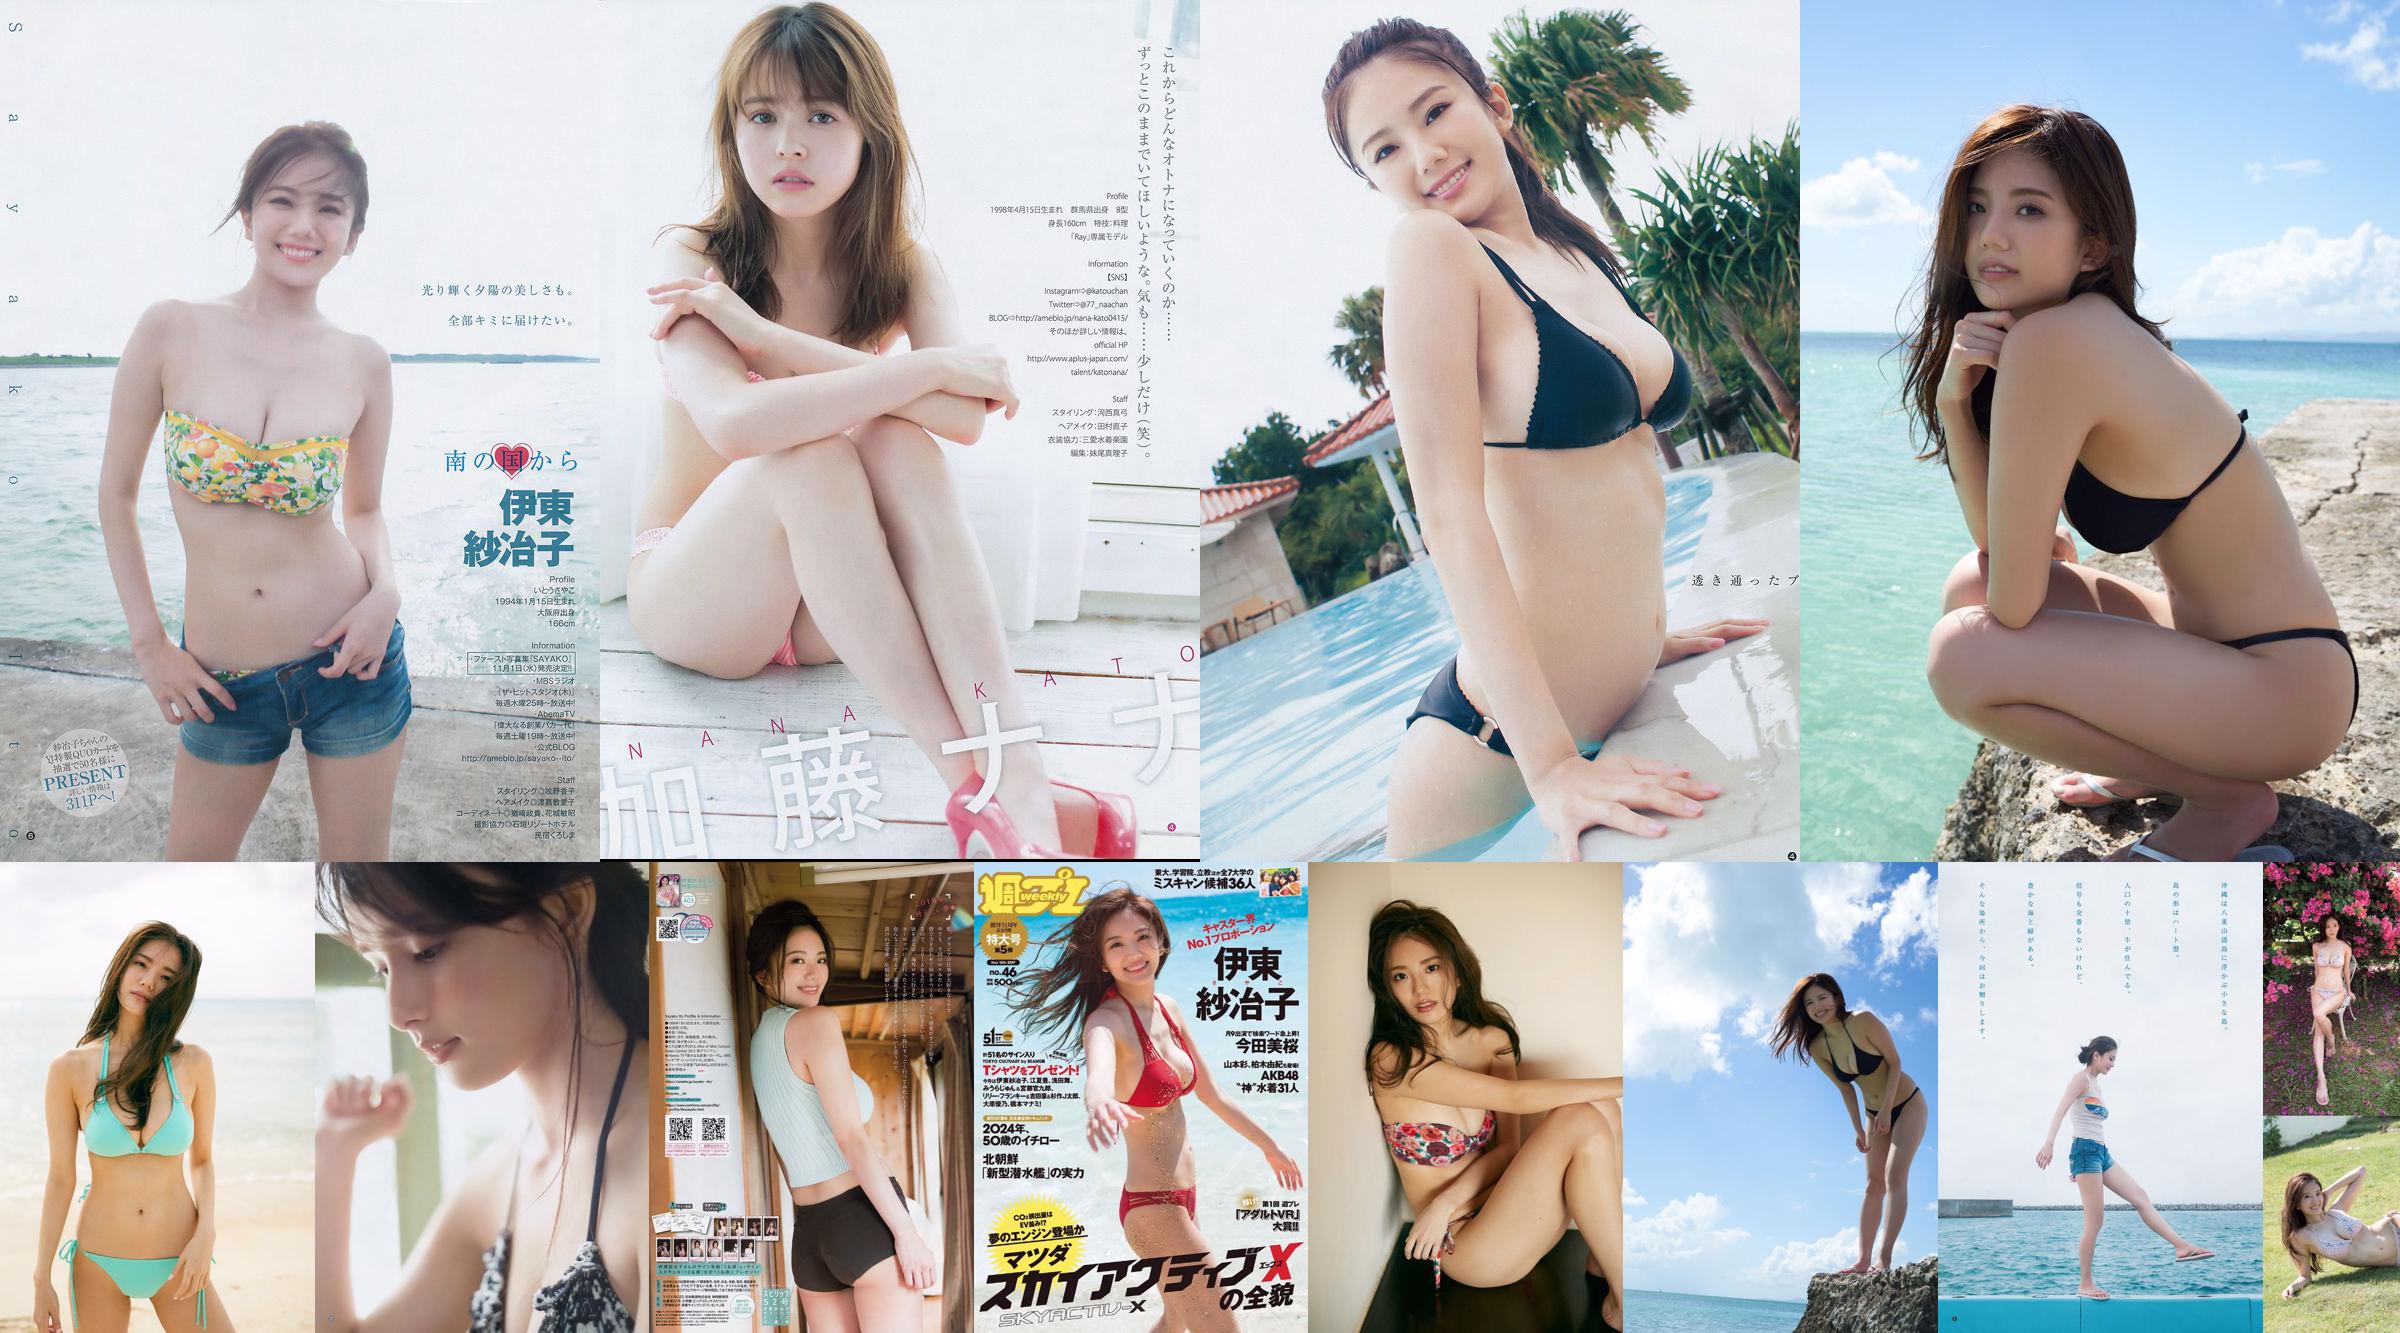 Ito Sayeko, Mima Reiko, Sugimoto Yumi, Sato Reina, Yoshiki りさ Toyama Akiko, Naninao [Weekly Playboy] 2016 No.36 Photo Magazine No.412cf1 Página 1